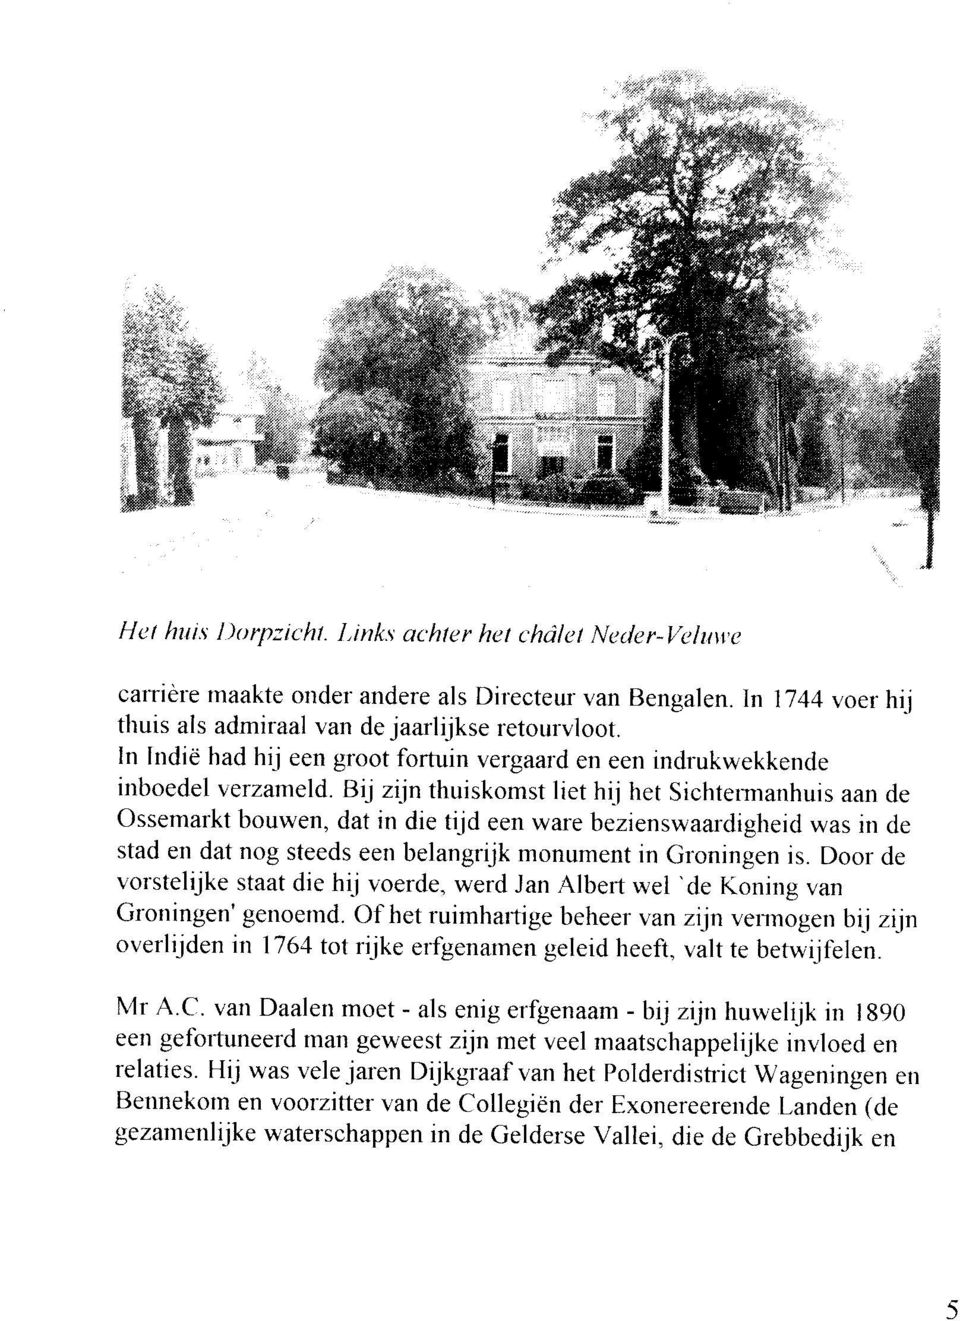 Bij zijn thuiskomst liet hij het Sichtermanhuis aan de ossemarkt bouwen, dat in die tijd een ware bezienswaardigheid was in de stad en dat nog steeds een belangnjk monument in Groningen is.